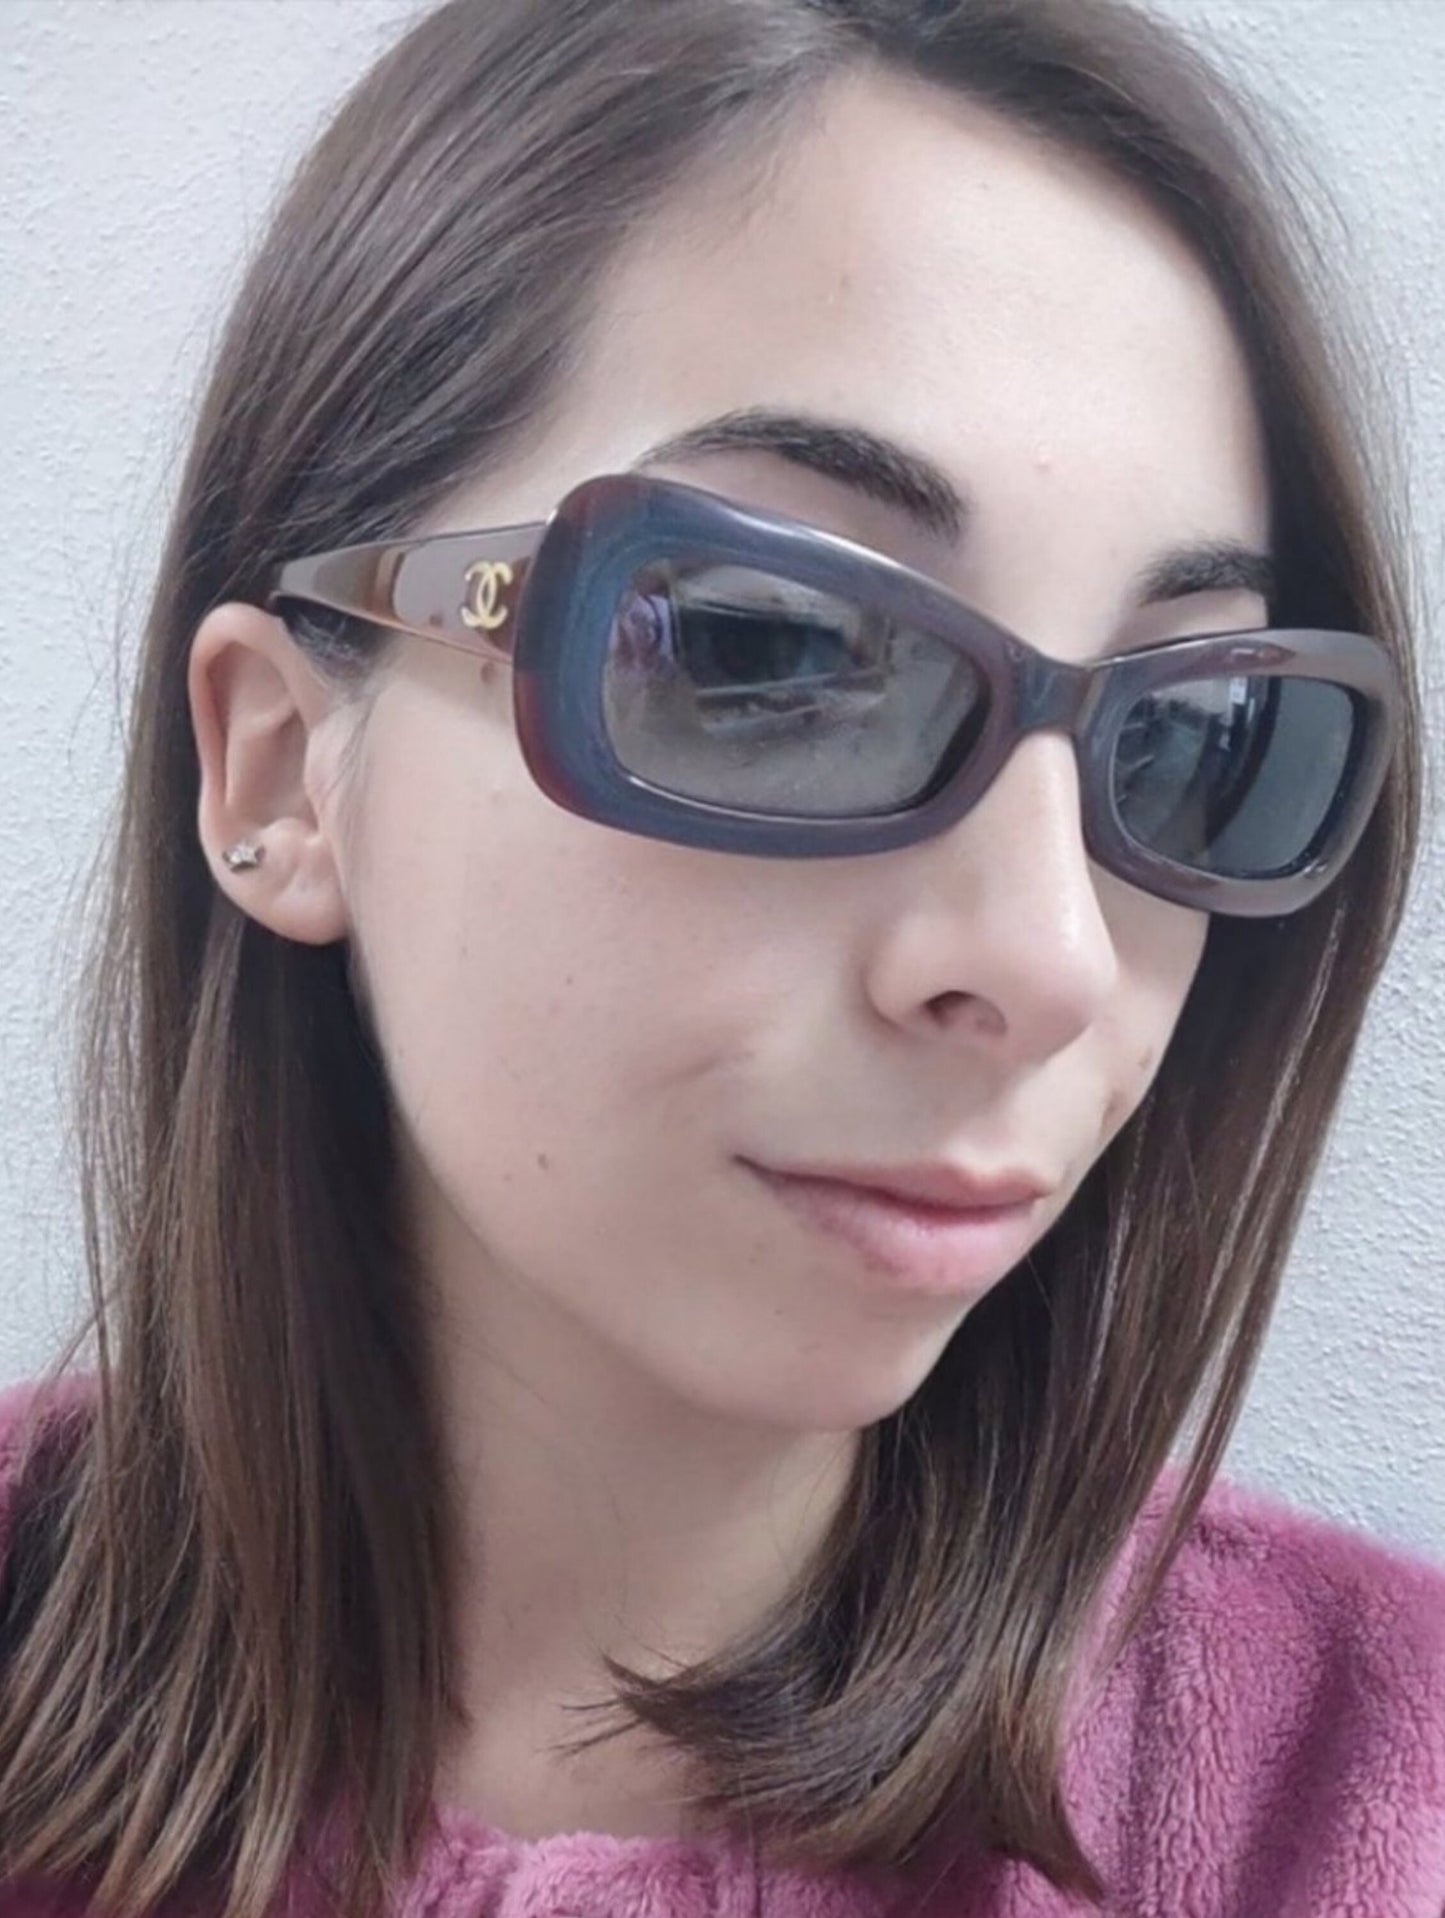 Occhiali da sole Chanel modello 5012 lunette brille sfumature anni '90